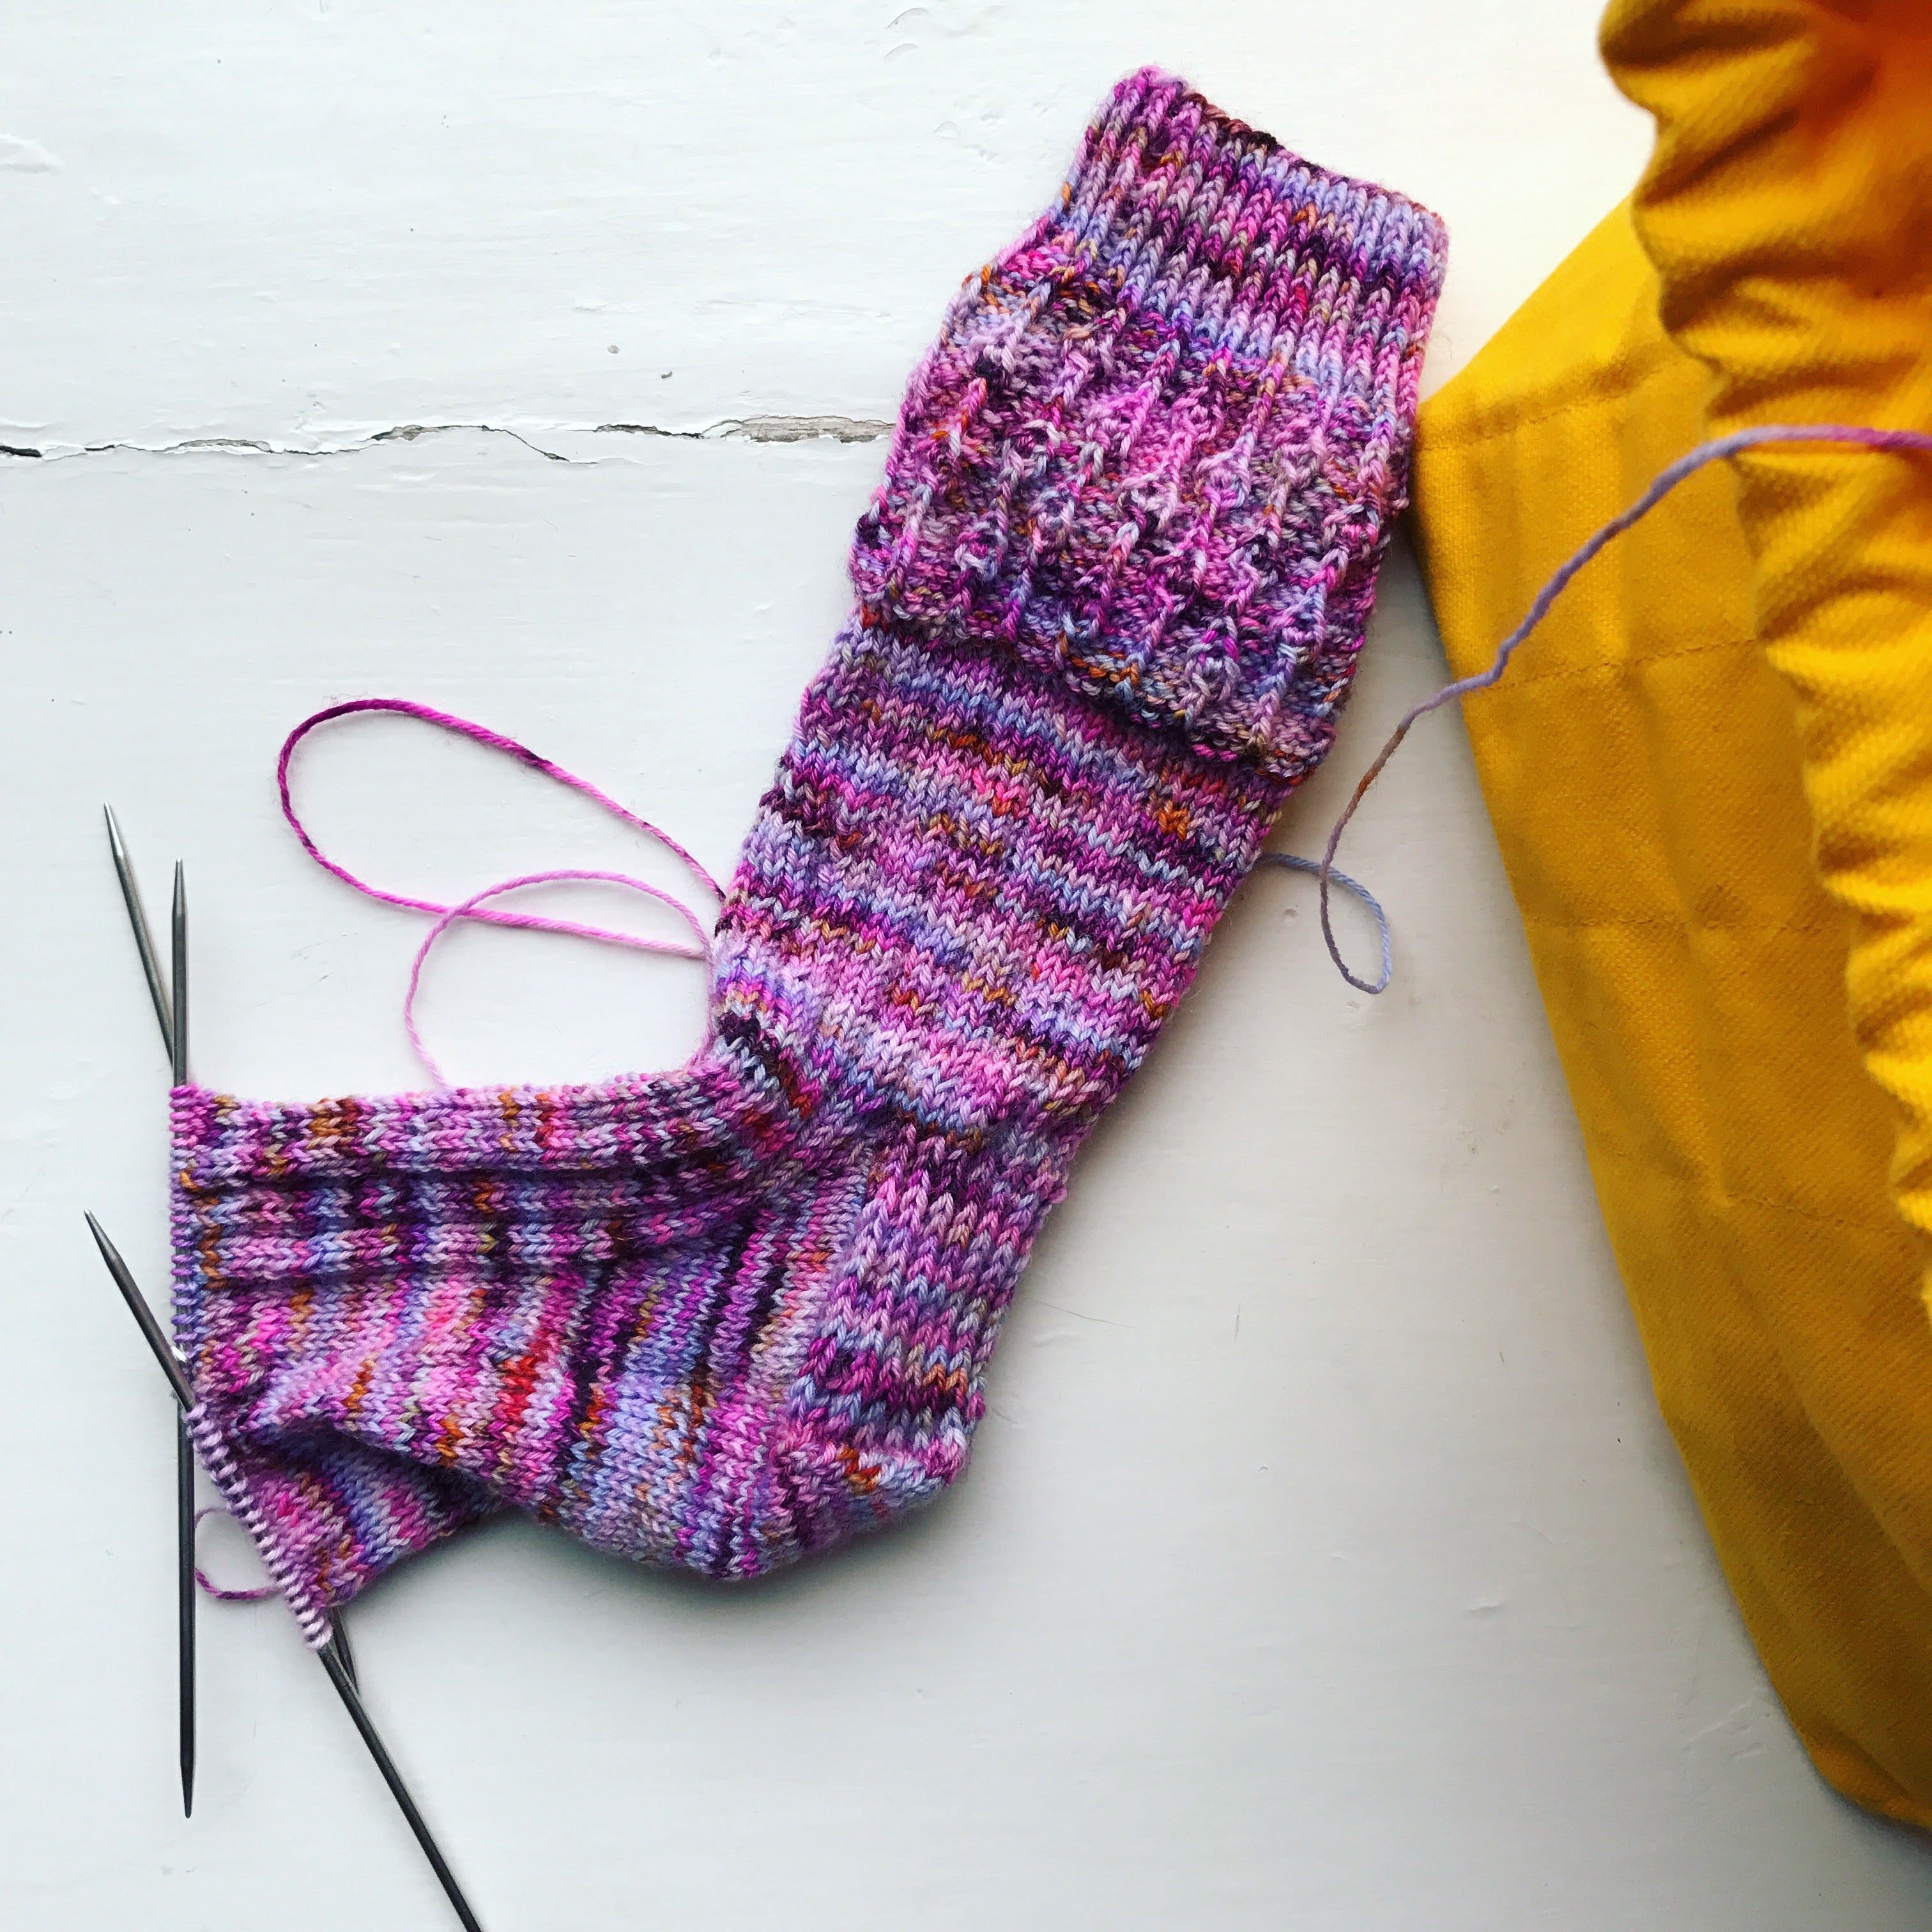 I am a Sock Knitting Machine - SweetGeorgia Yarns